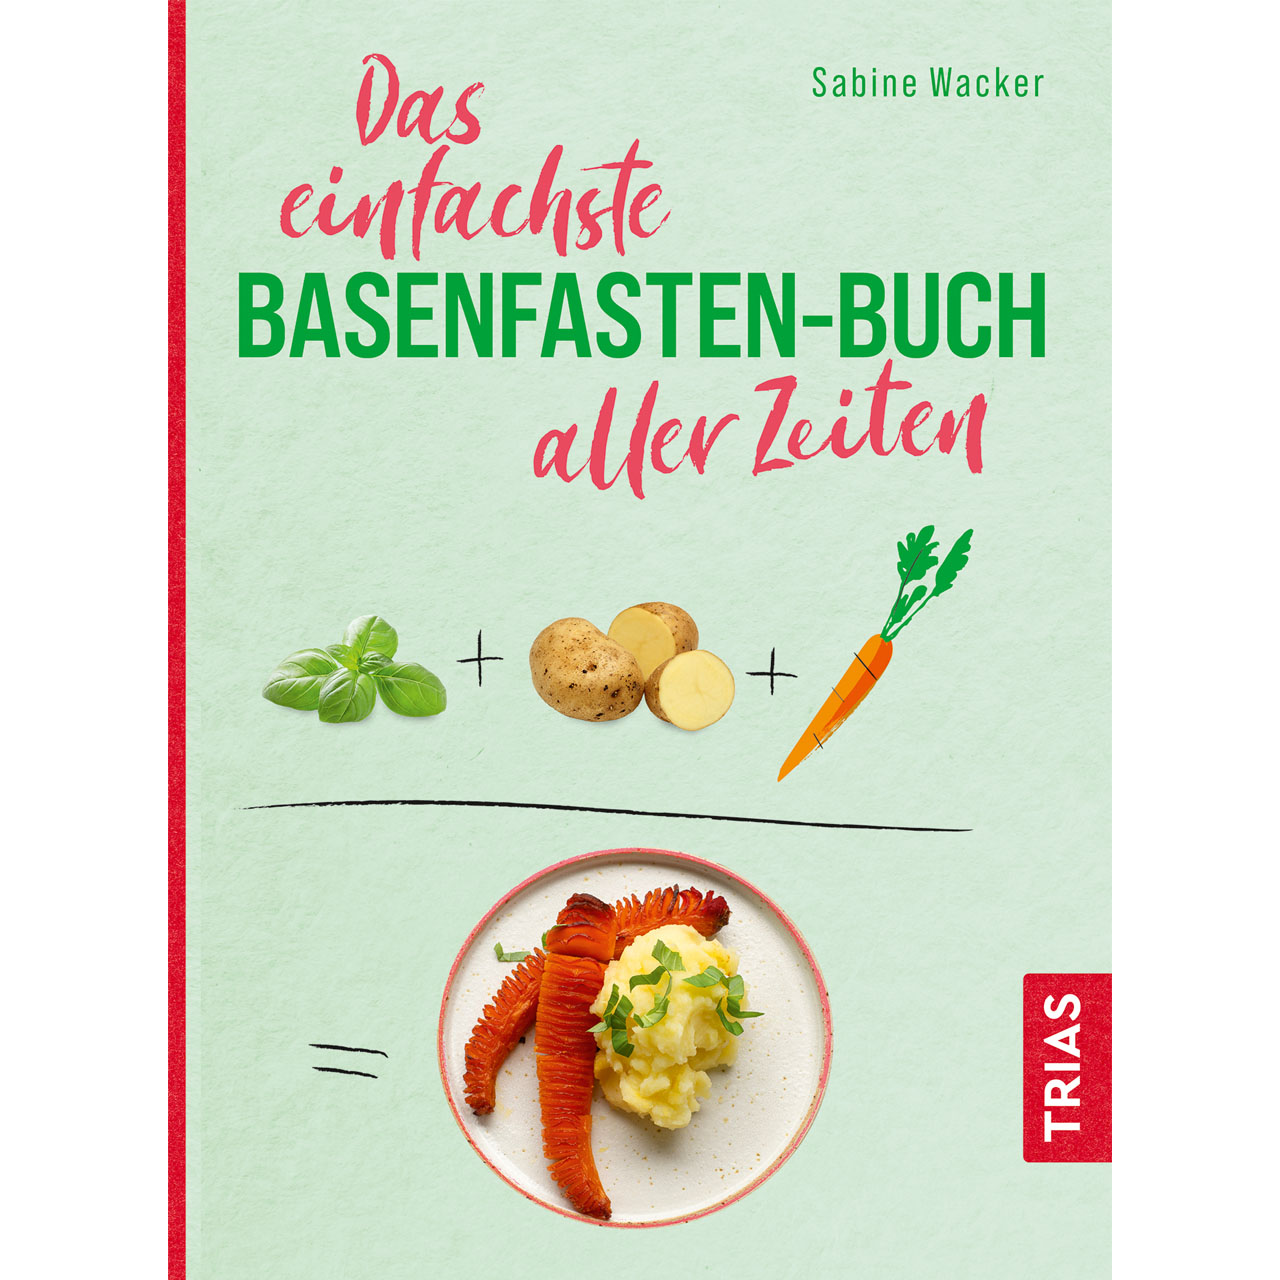 Das einfachste Basenfasten-Buch aller Zeiten von Sabine Wacker, TRIAS Verlag